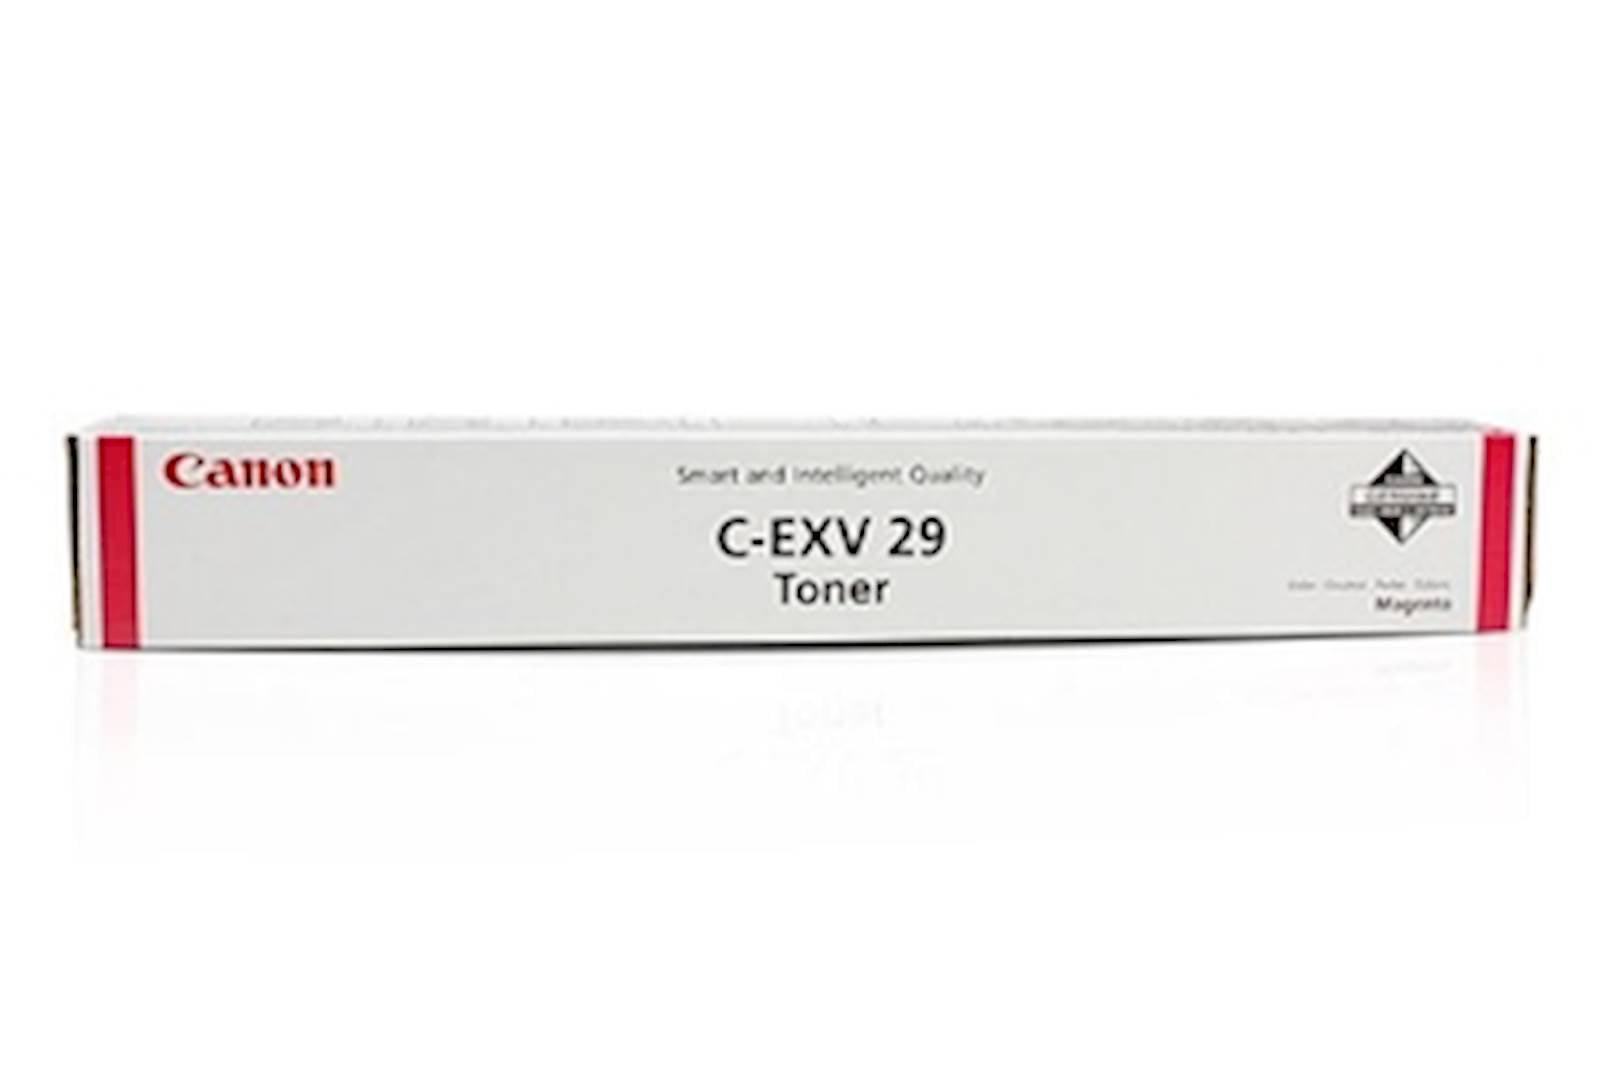 Toner CANON C-EXV 29 Magenta CEXV29M